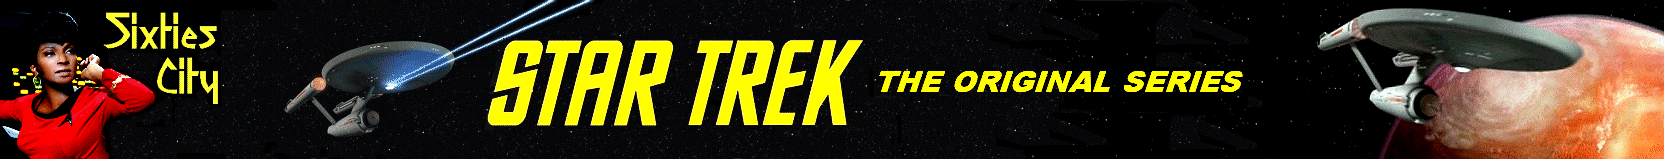 Sixties City Star Trek - The Original Series